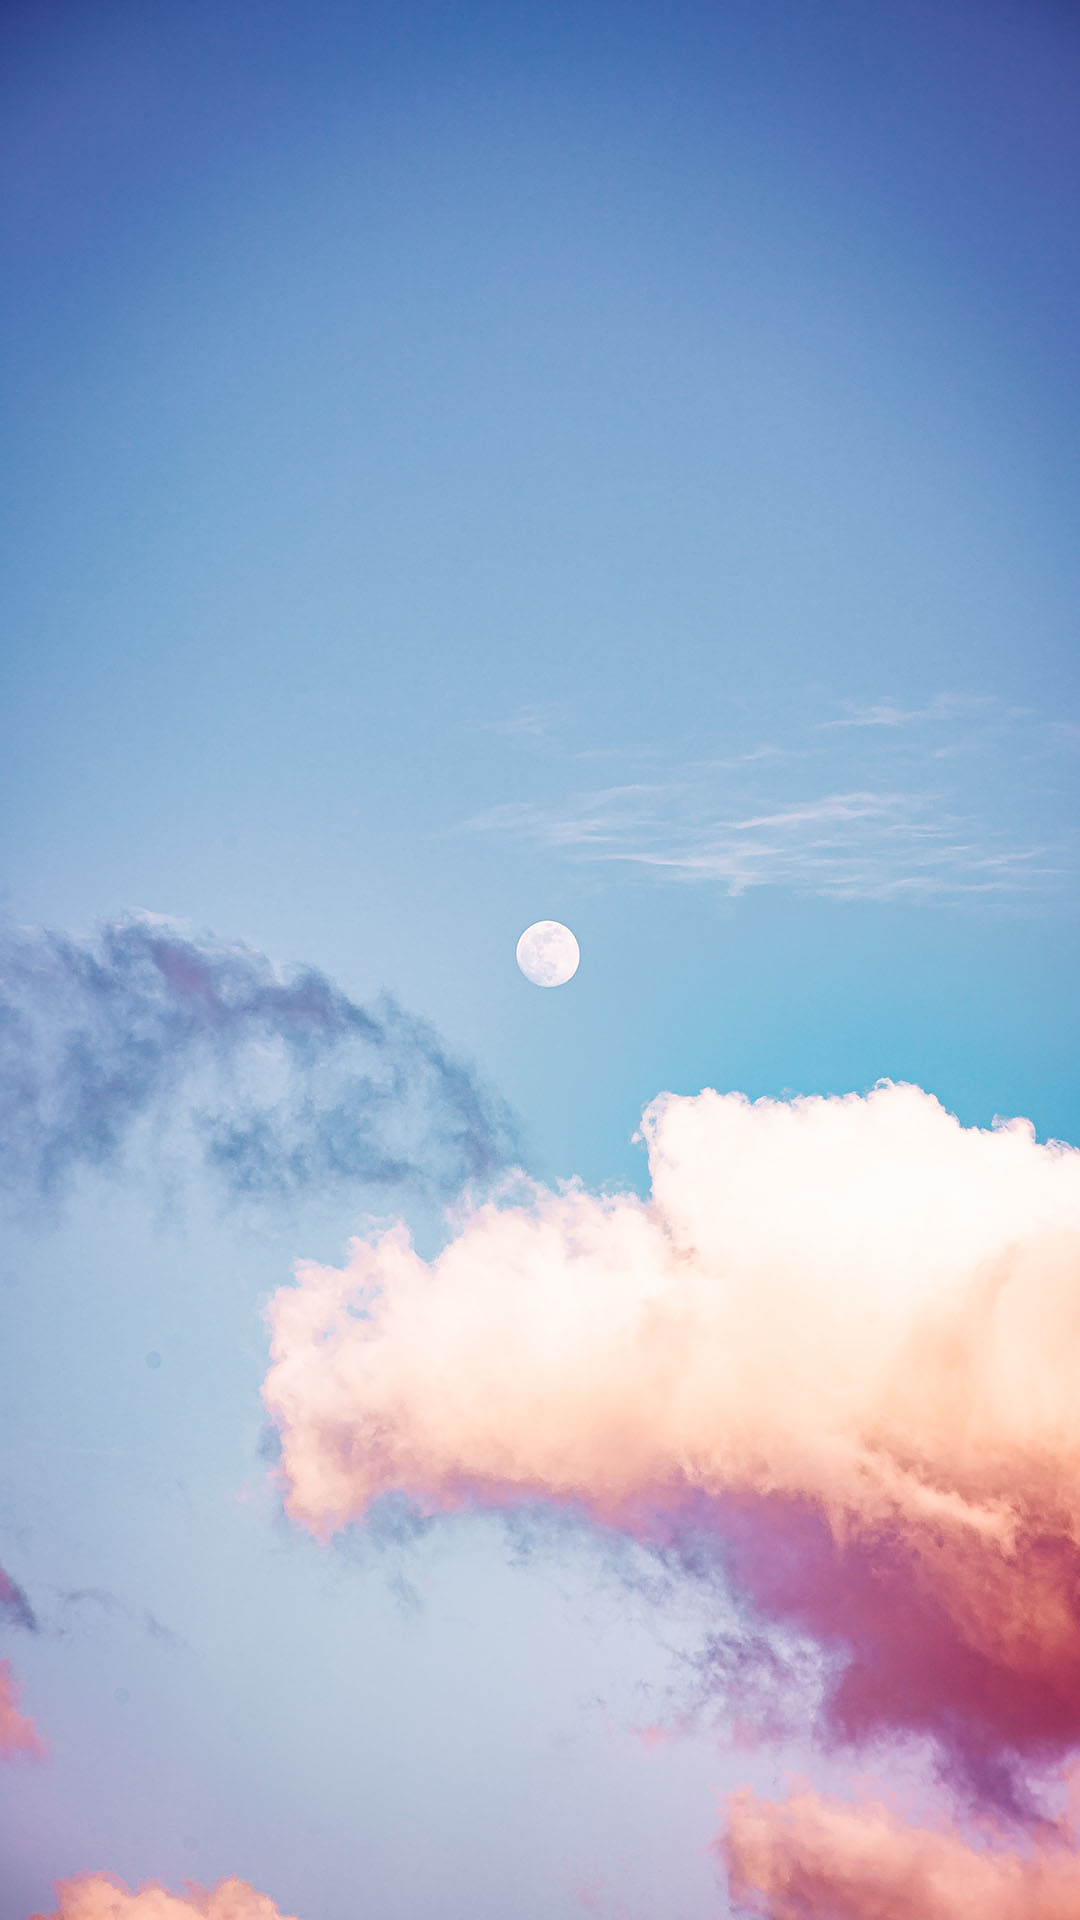 Mây Đẹp - chủ đề đầy phấn khích cho hình nền của bạn. Với những bức ảnh mây đẹp, bạn sẽ tận hưởng ngay những khoảnh khắc yên tĩnh và đẹp nhất của thiên nhiên. Từ những bức ảnh mây trôi lững lờ cho đến những bức ảnh hoàng hôn đẹp như tranh vẽ, Mây Đẹp sẽ cho bạn cảm giác hoàn toàn mới lạ và đặc biệt.